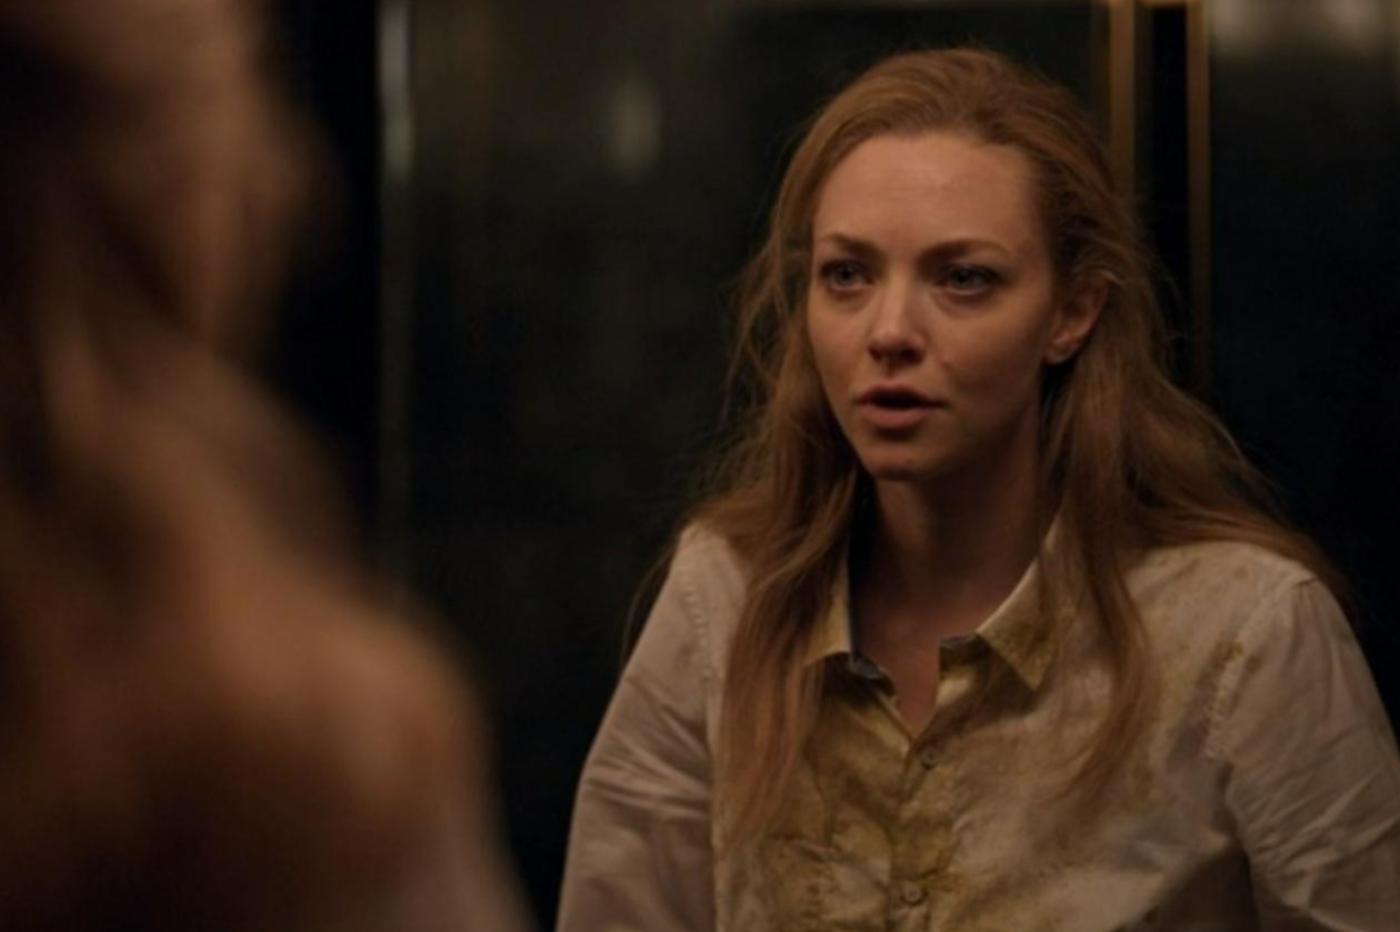 Capture d'écran de la série The Dropout montrant Elizabeth Holmes paraissant extrêmement fatigué devant un miroir